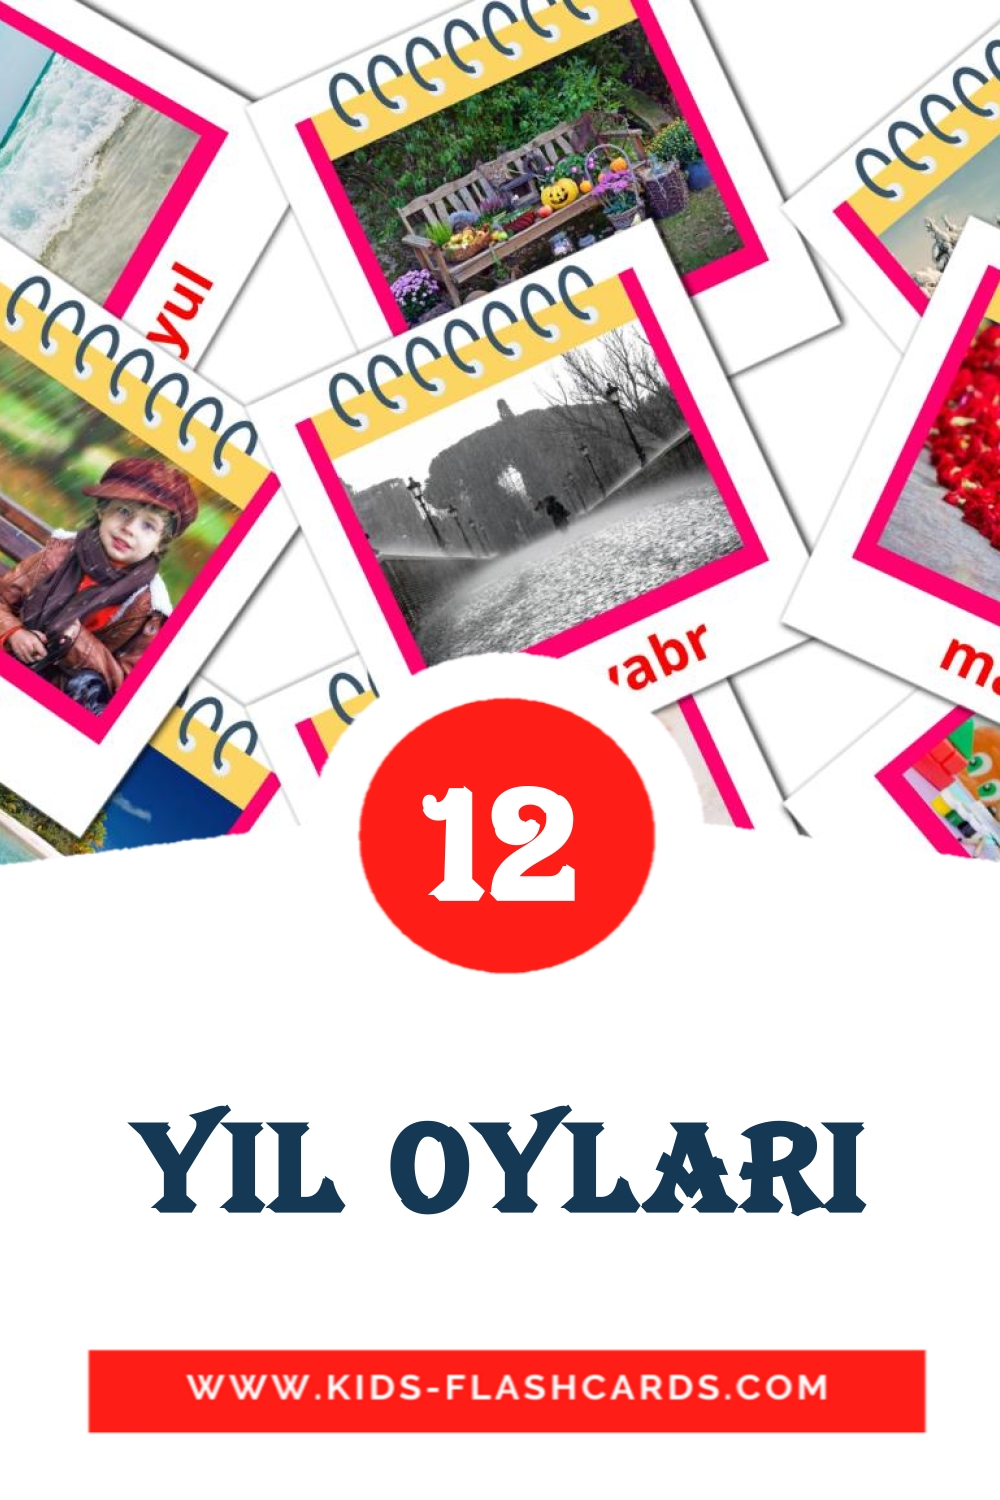 Yil oylari на узбекском для Детского Сада (12 карточек)